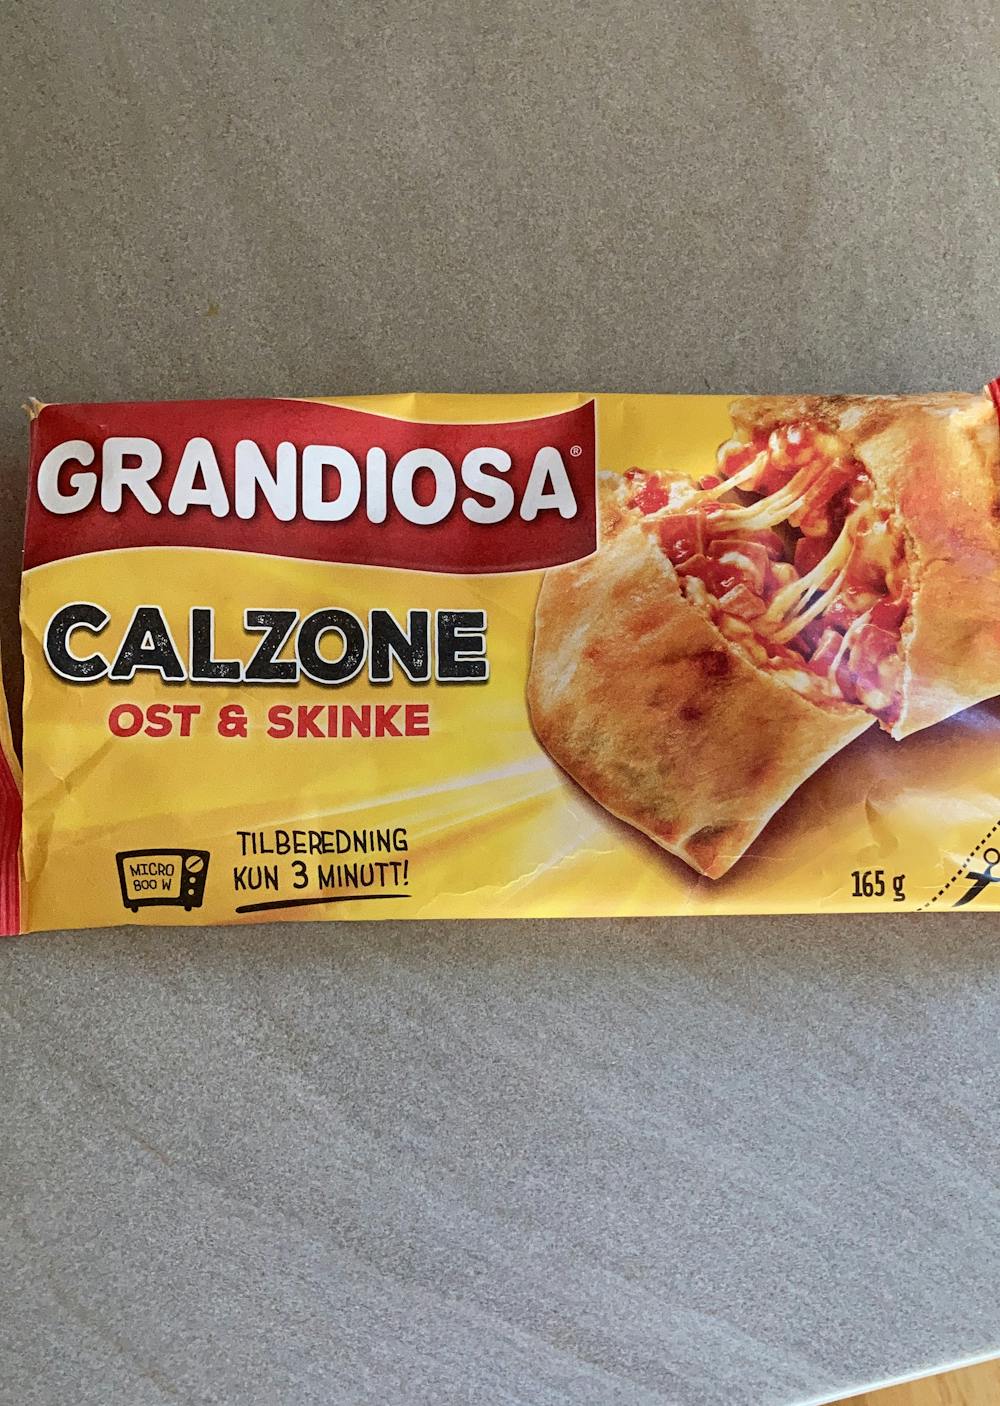 Calzone, ost & skinke, Gradiosa